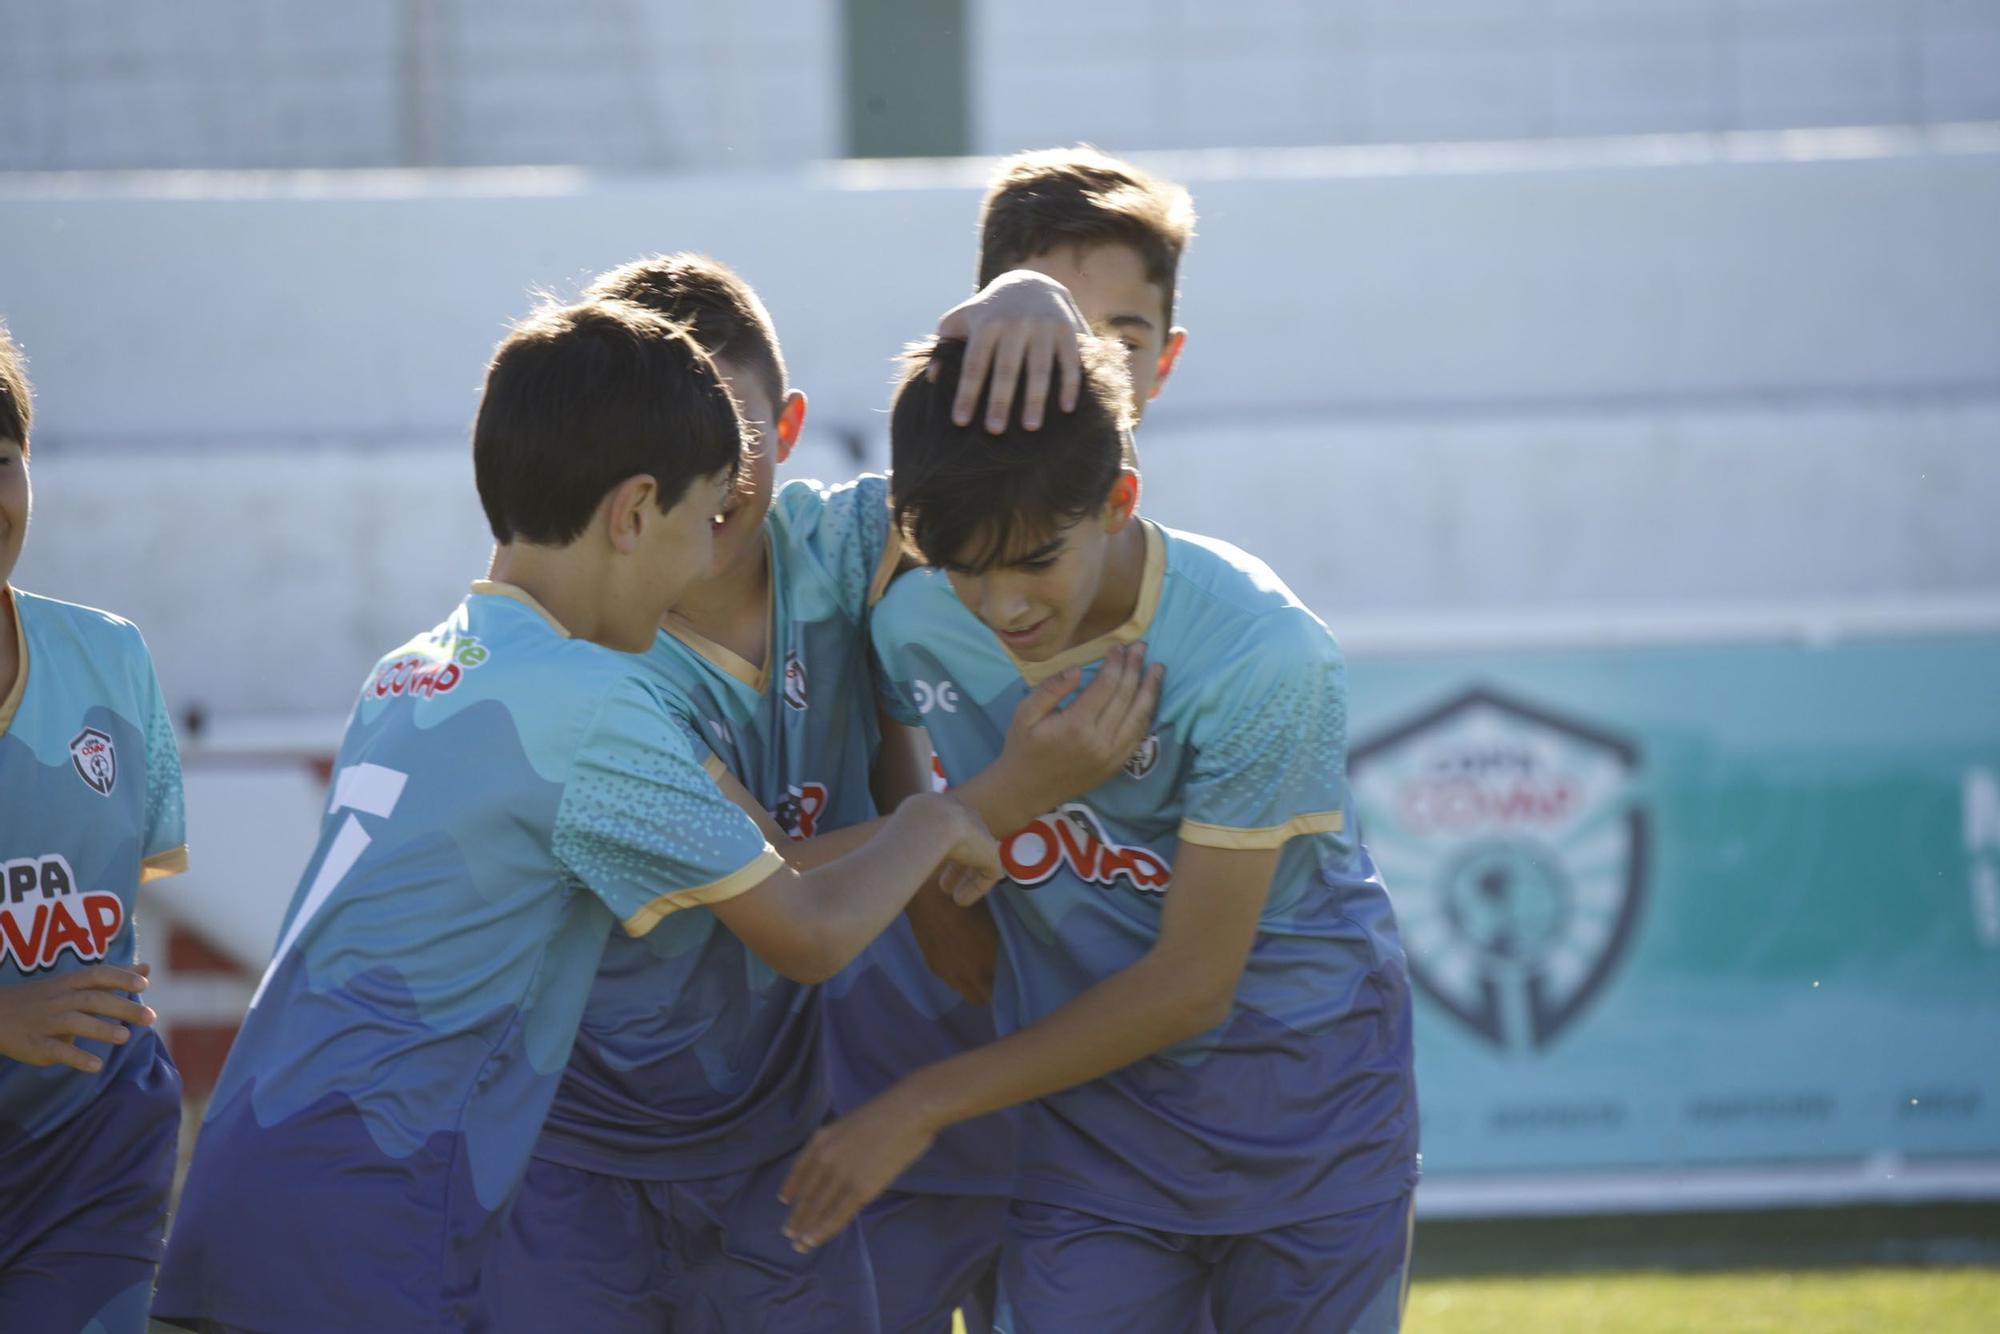 La Copa Covap en Pozoblanco en imágenes